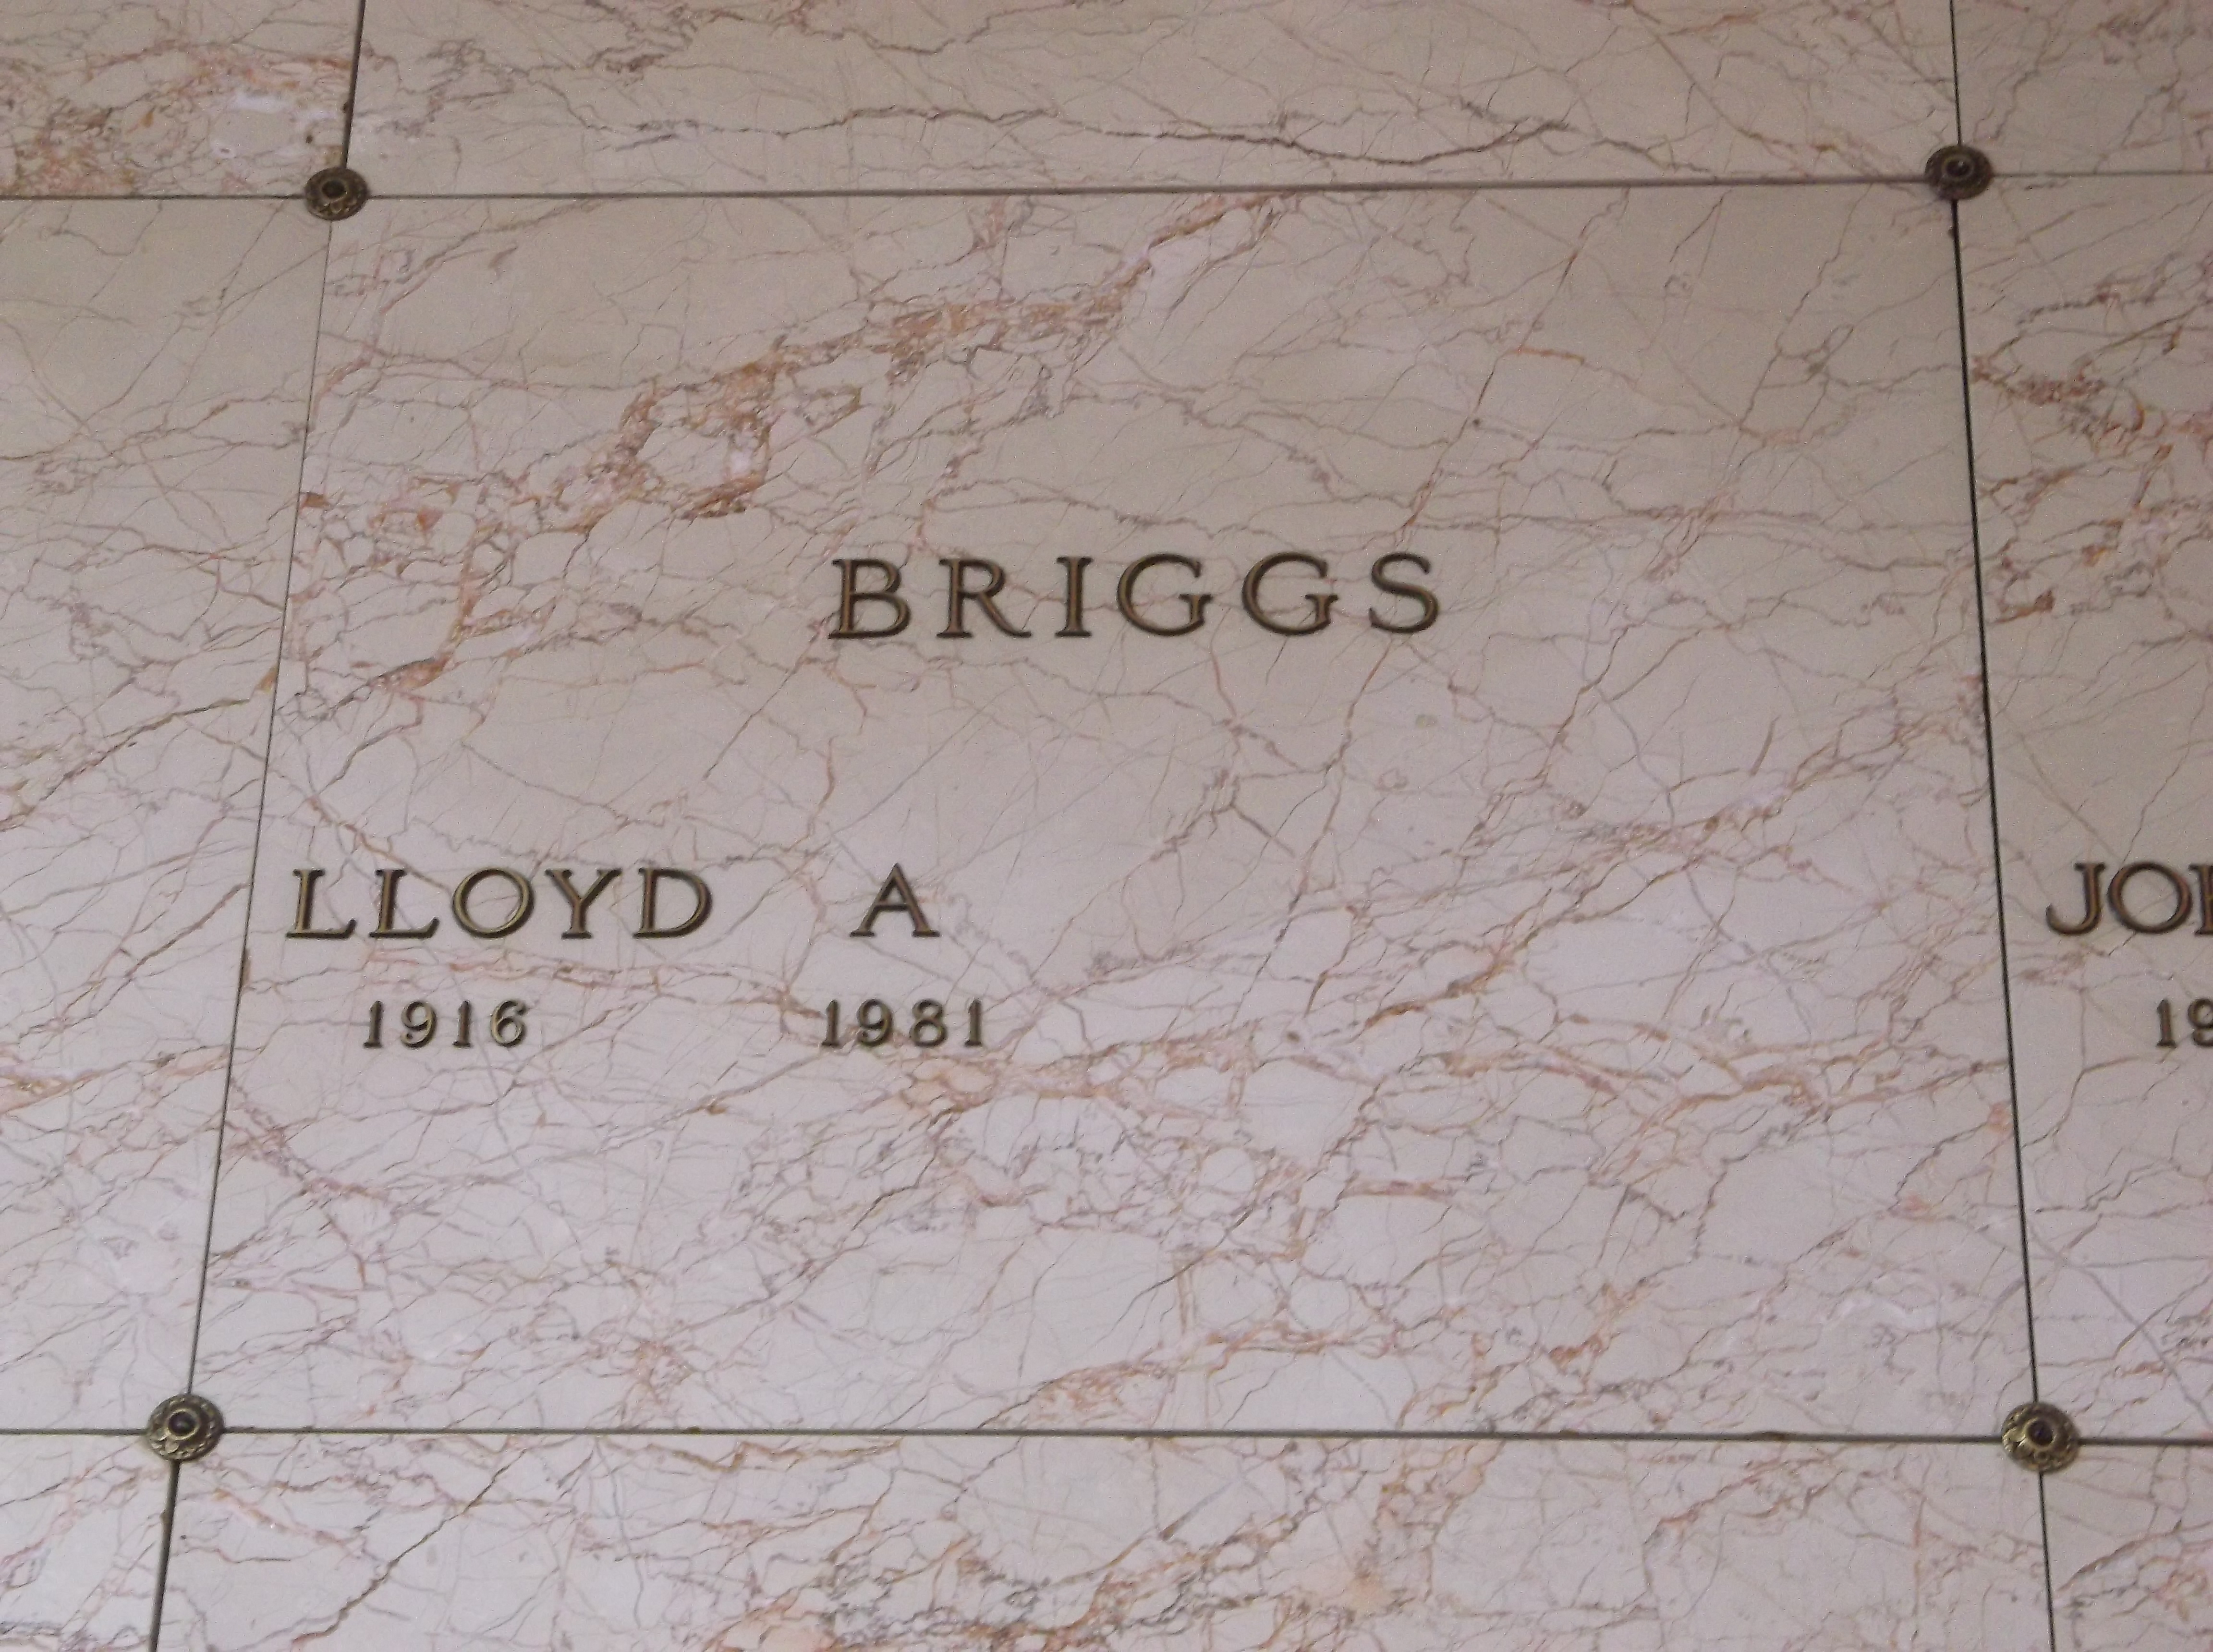 Lloyd A Briggs